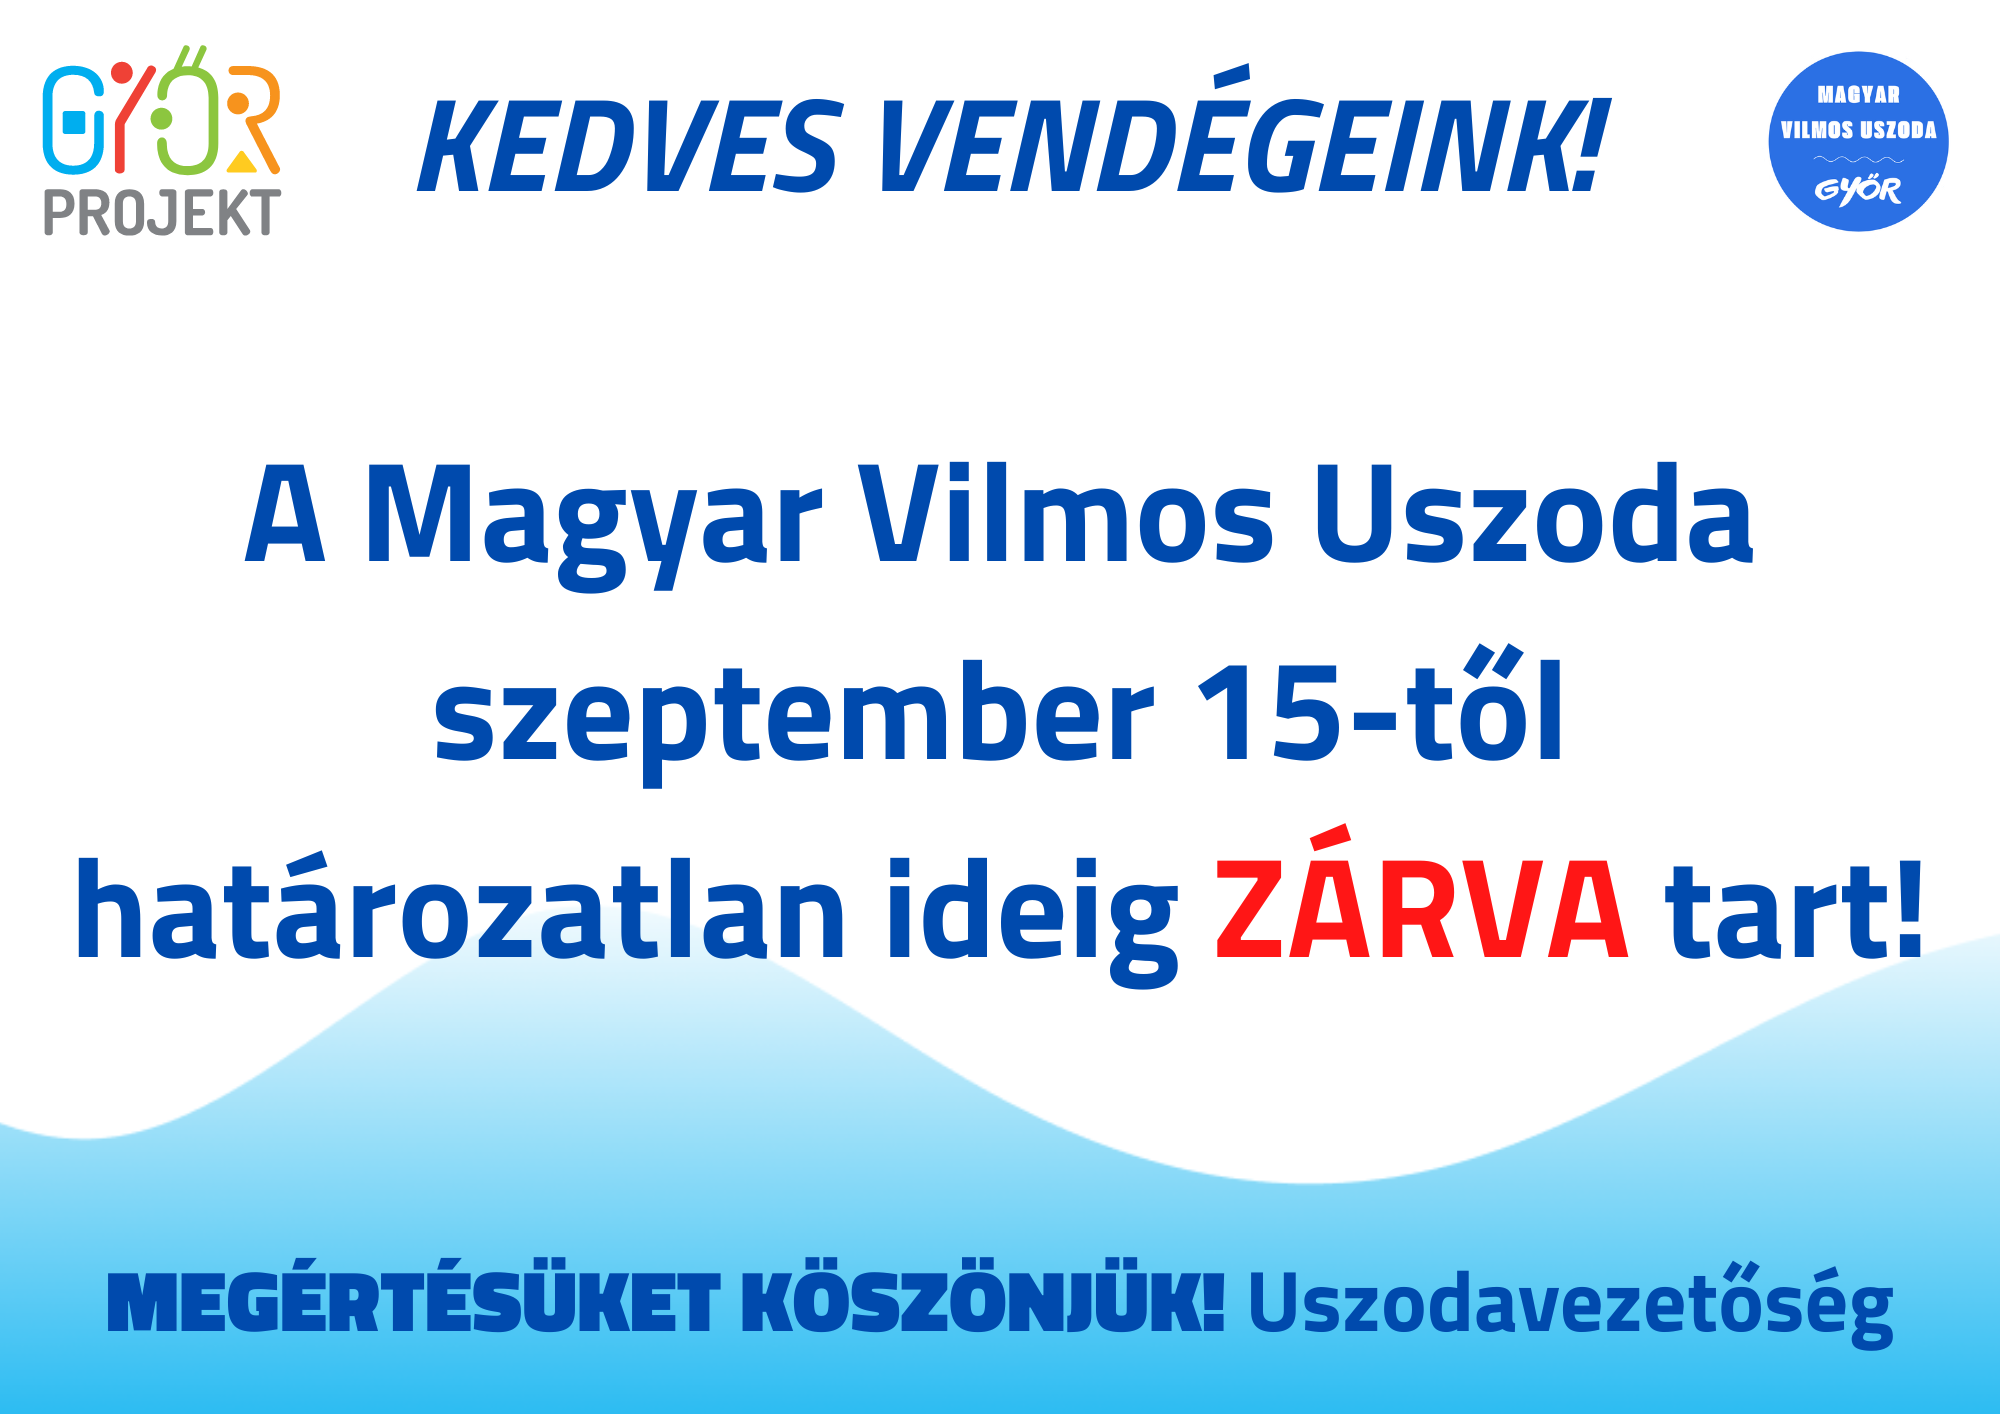 Kedves vendégeink! A Magyar Vilmos Uszoda szeptember 15-től határozatlan ideig zárva tart! Megértésüket köszönjük.